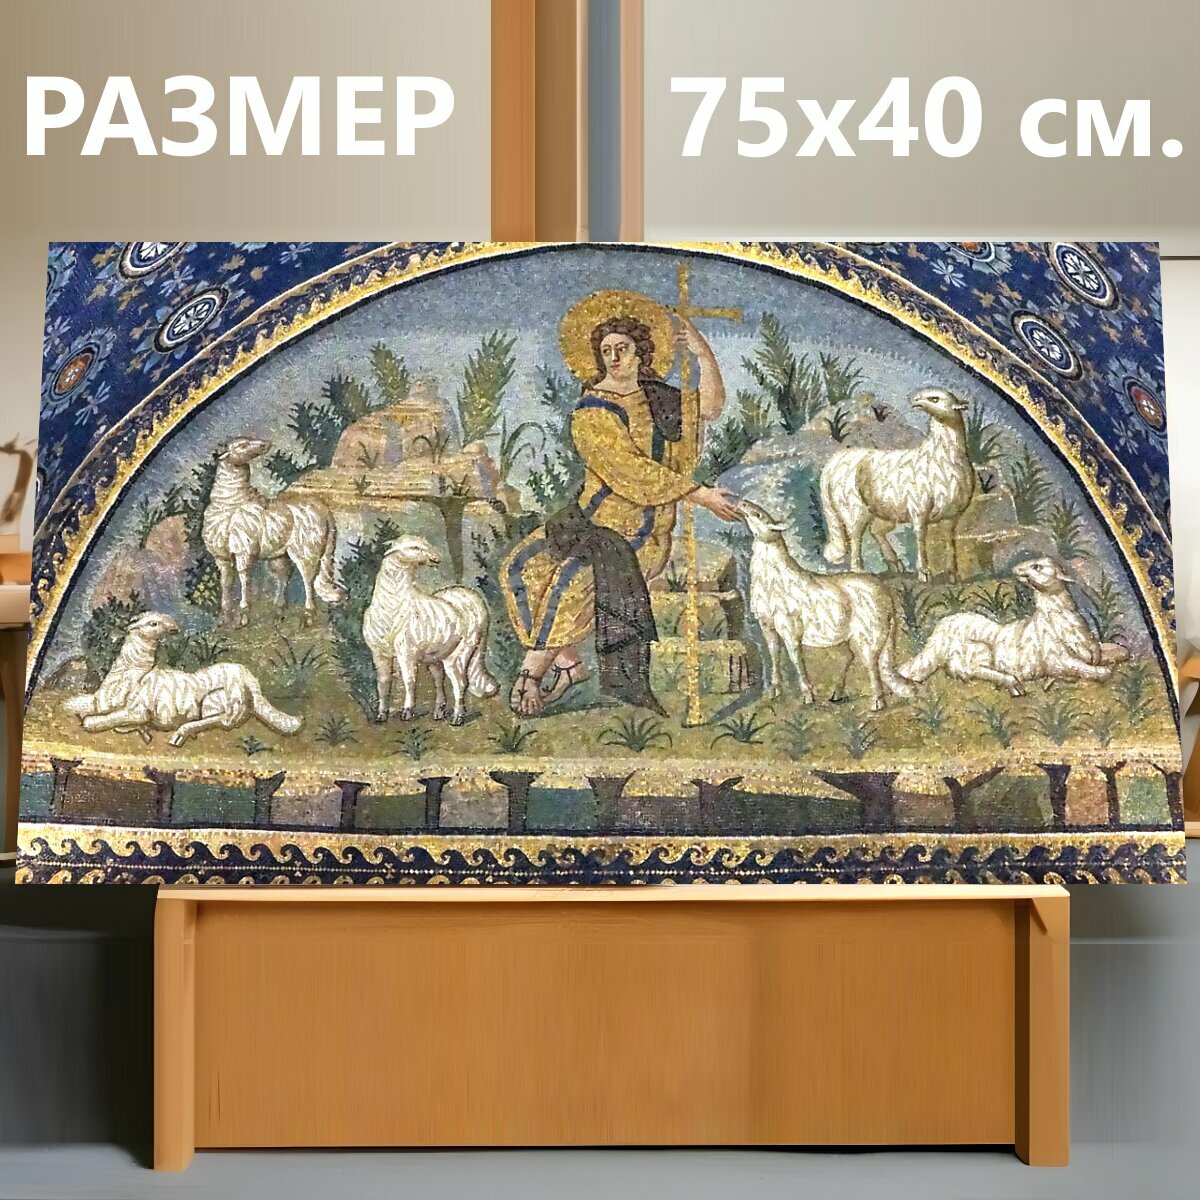 Картина на холсте "Равенна, мозаика, византийский" на подрамнике 75х40 см. для интерьера